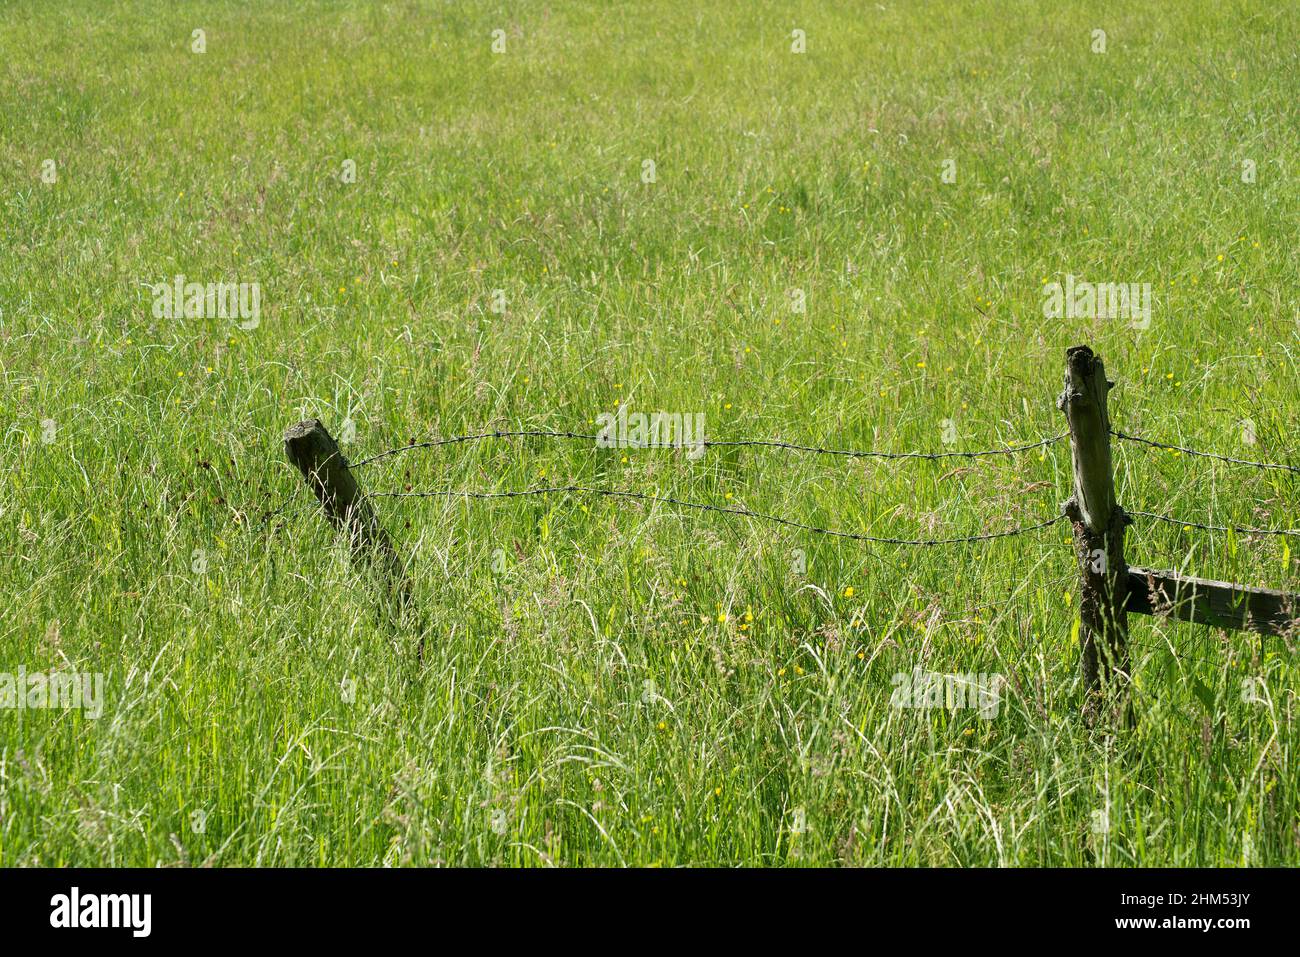 Imagen en color de una valla de madera rota con alambre de púas estirado entre dos postes en un campo y rodeado de varias hierbas Foto de stock